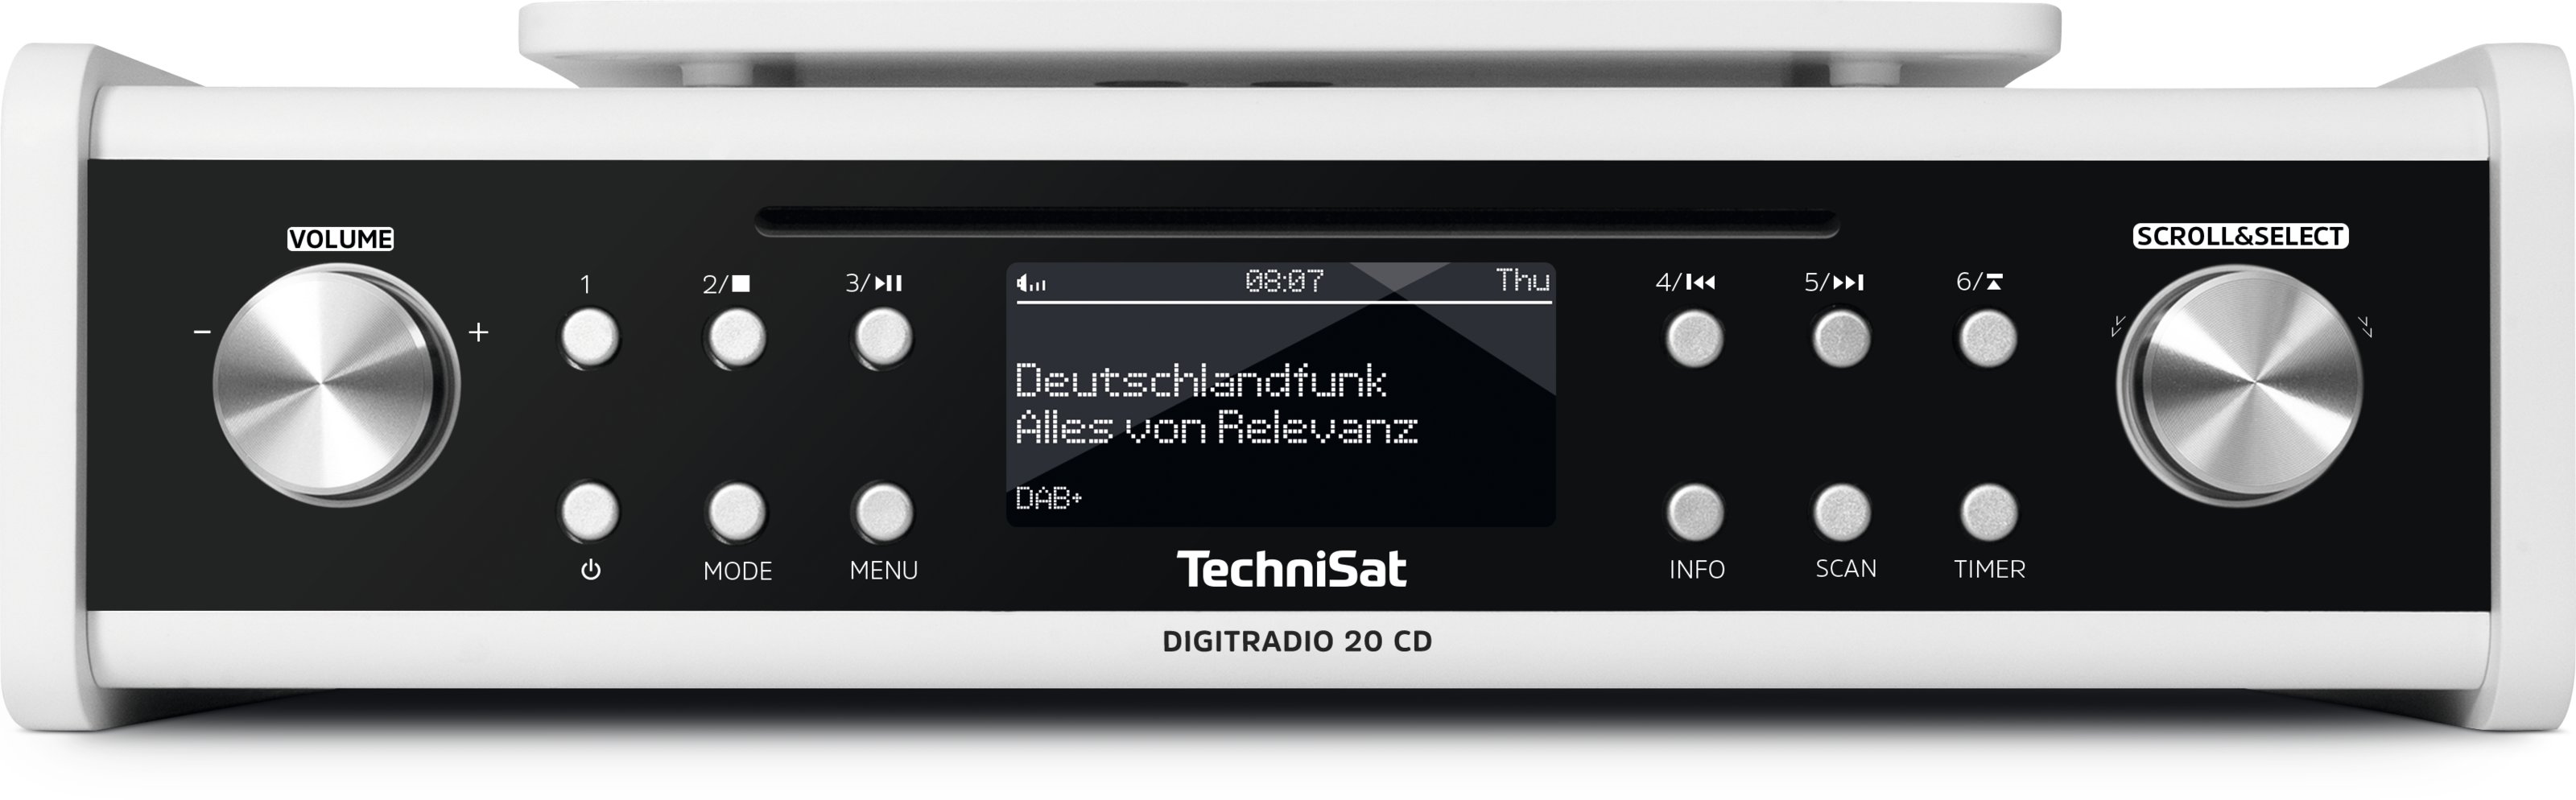 CD weiss TechniSat DIGITRADIO-20 Küchenradio